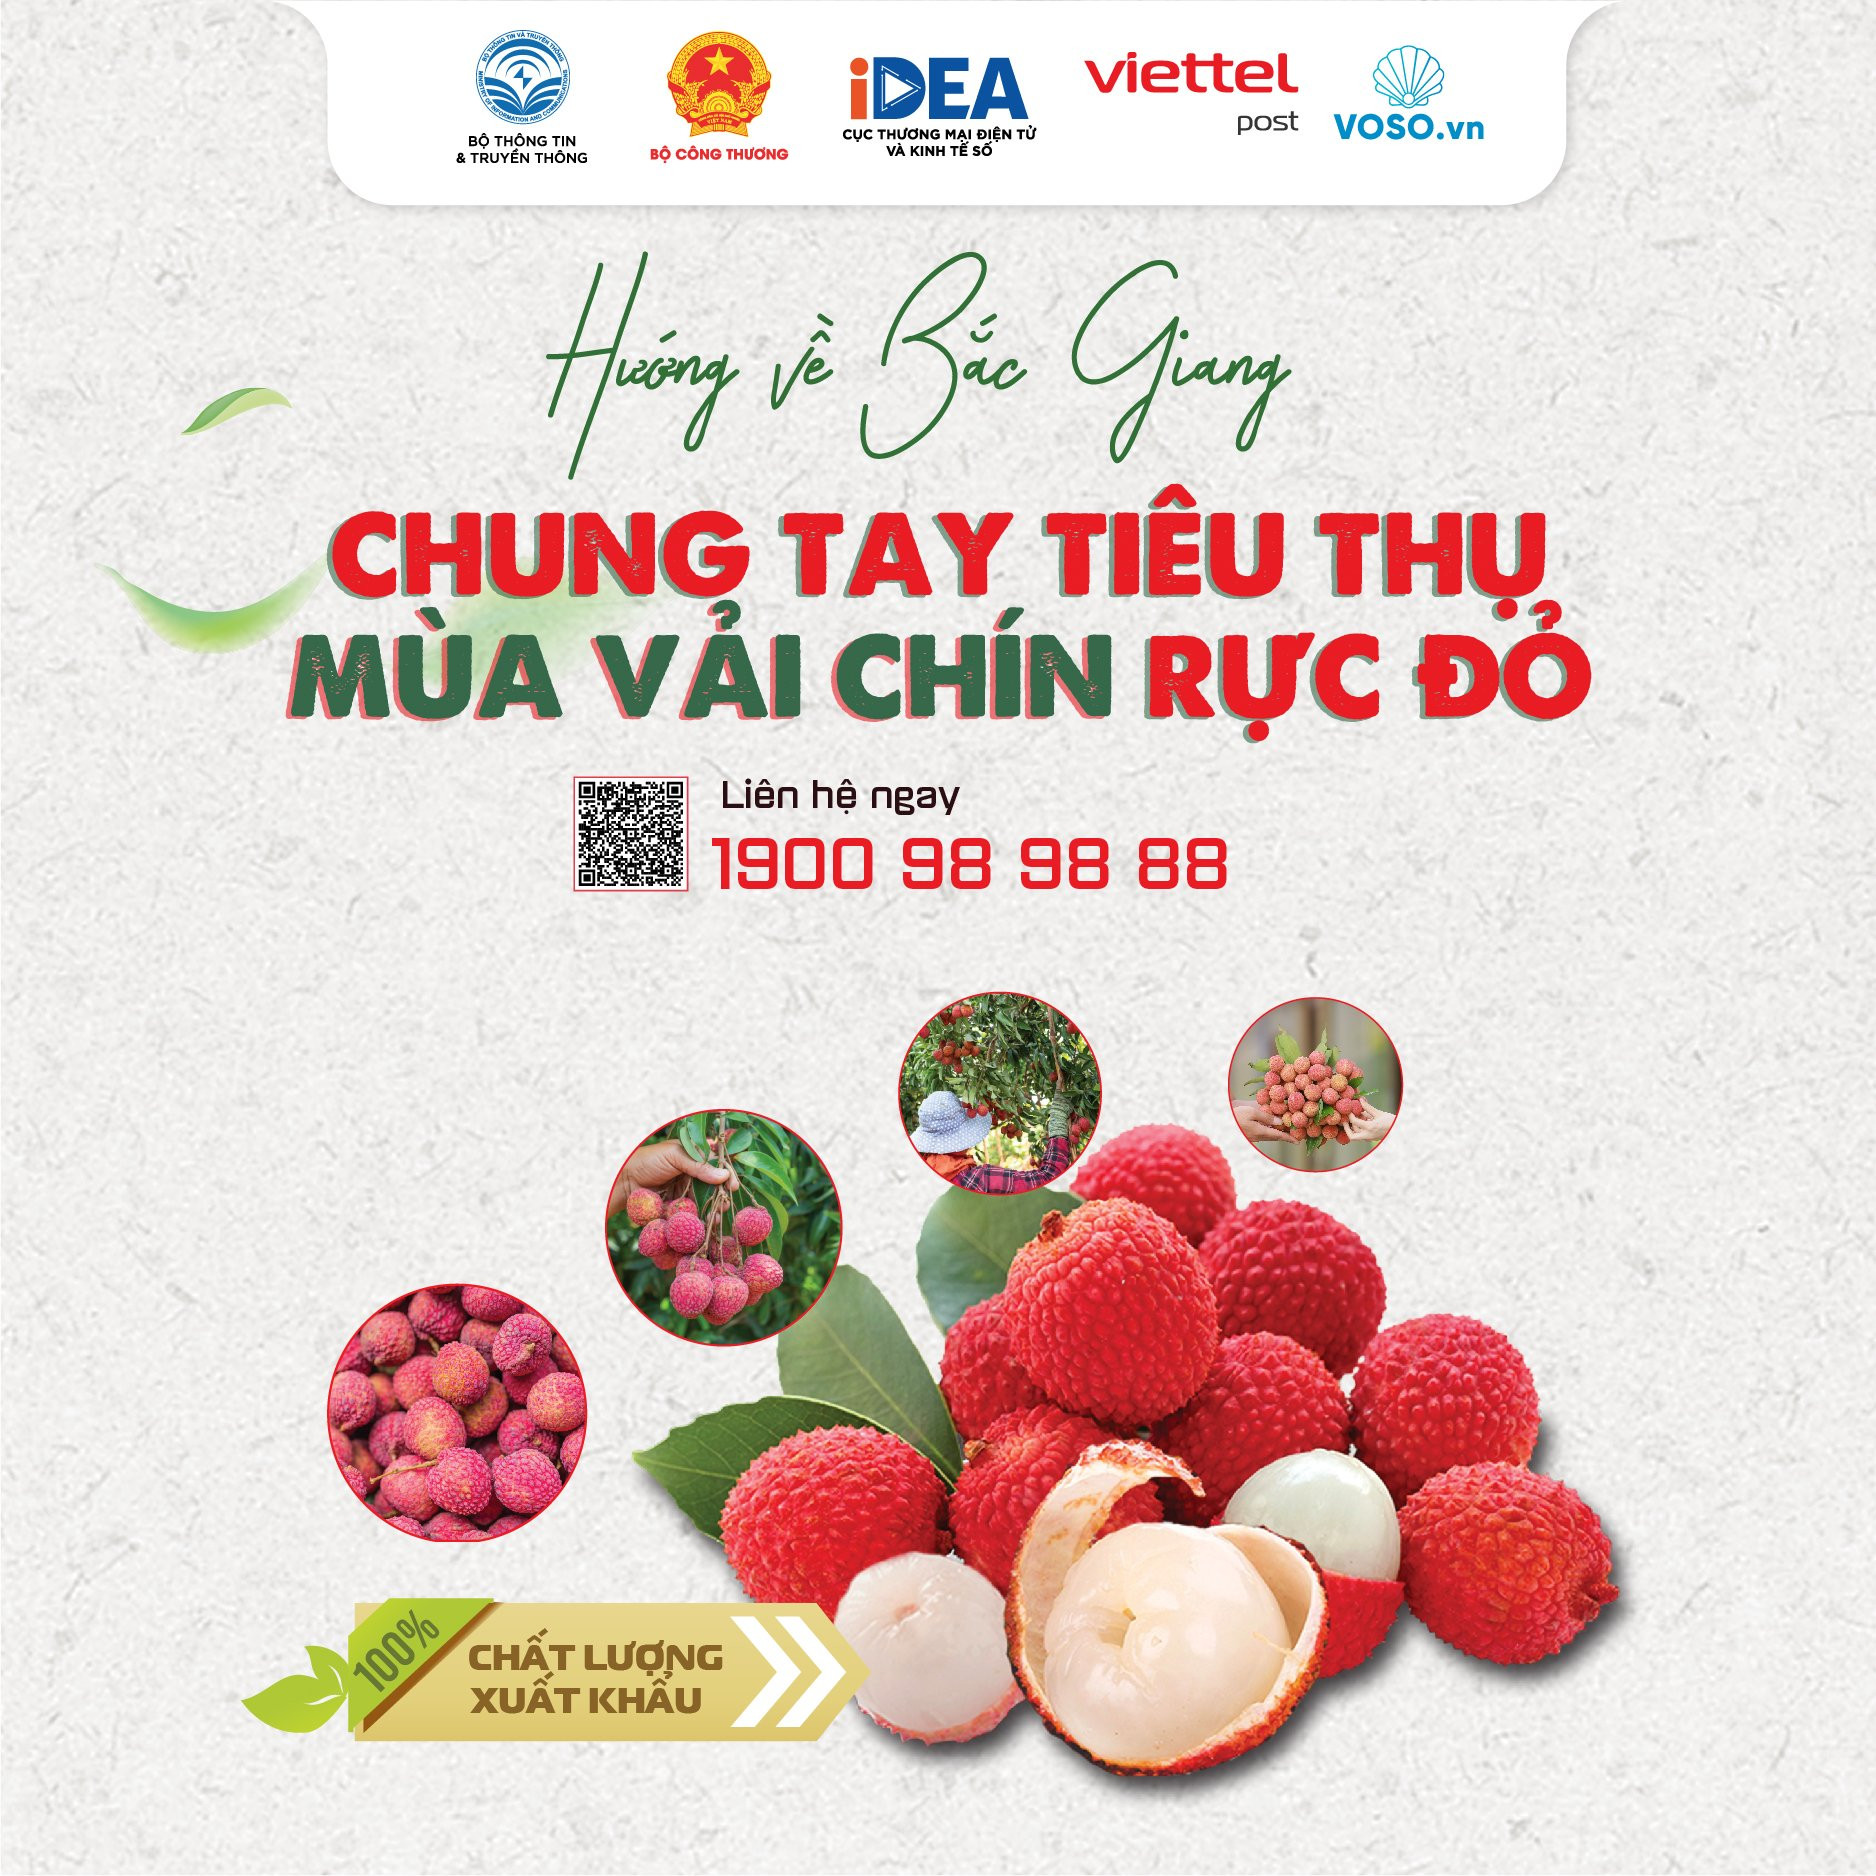 Hành trình nông sản Việt từ vườn đến bàn ăn trong kỷ nguyên số - Ảnh 1.